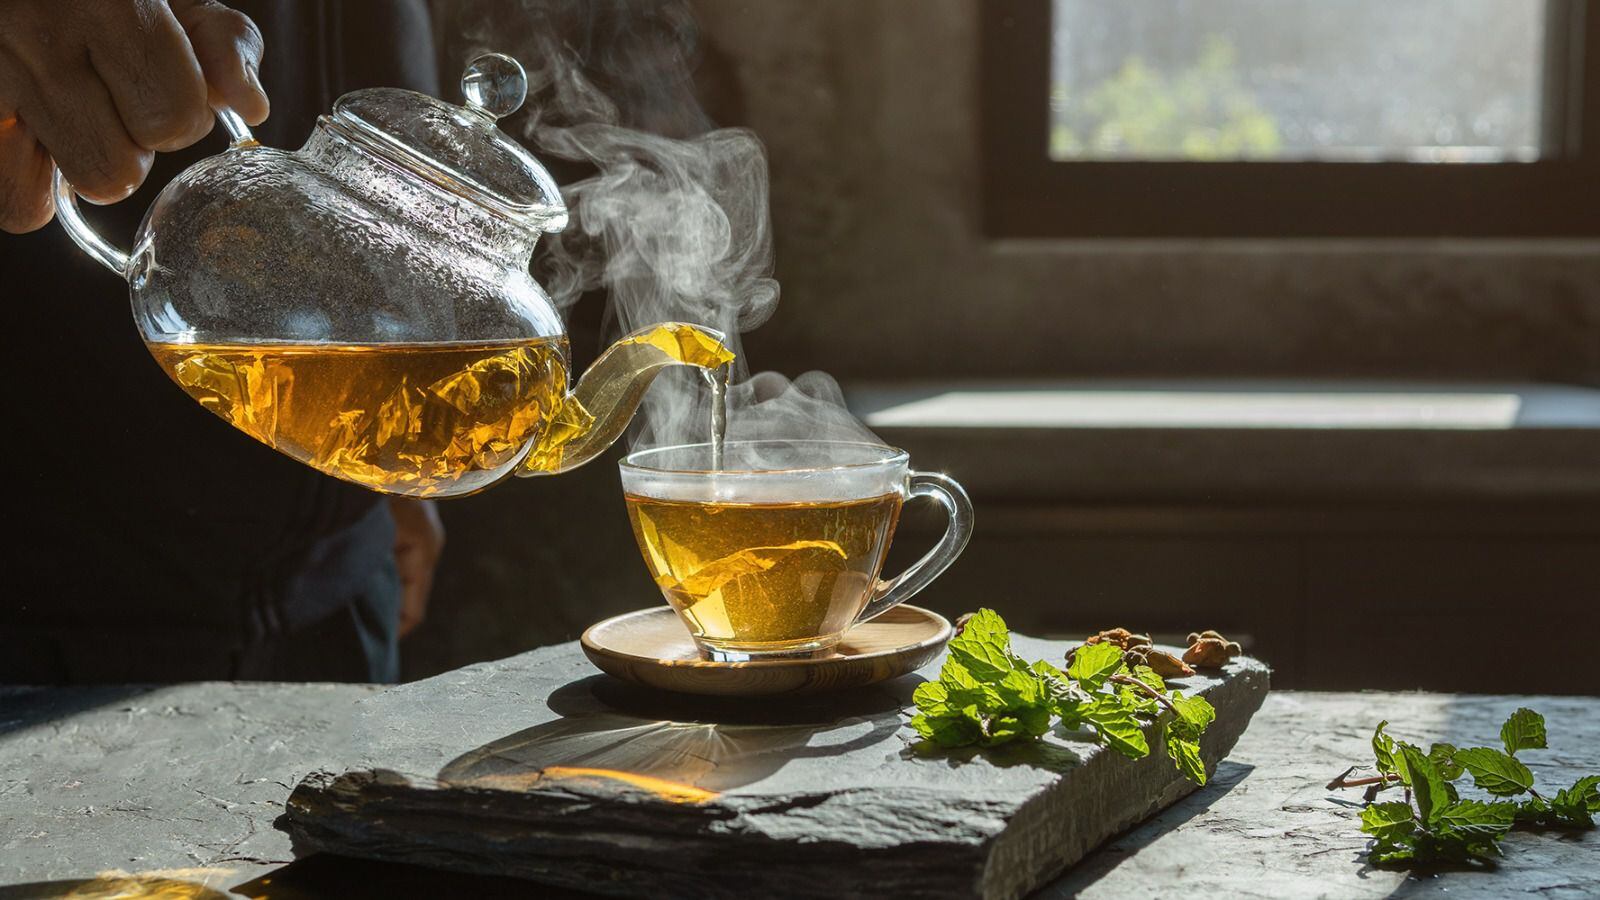 El té de hierbabuena ofrece múltiples propiedades curativas según la medicina tradicional. (Foto: Shutterstock)